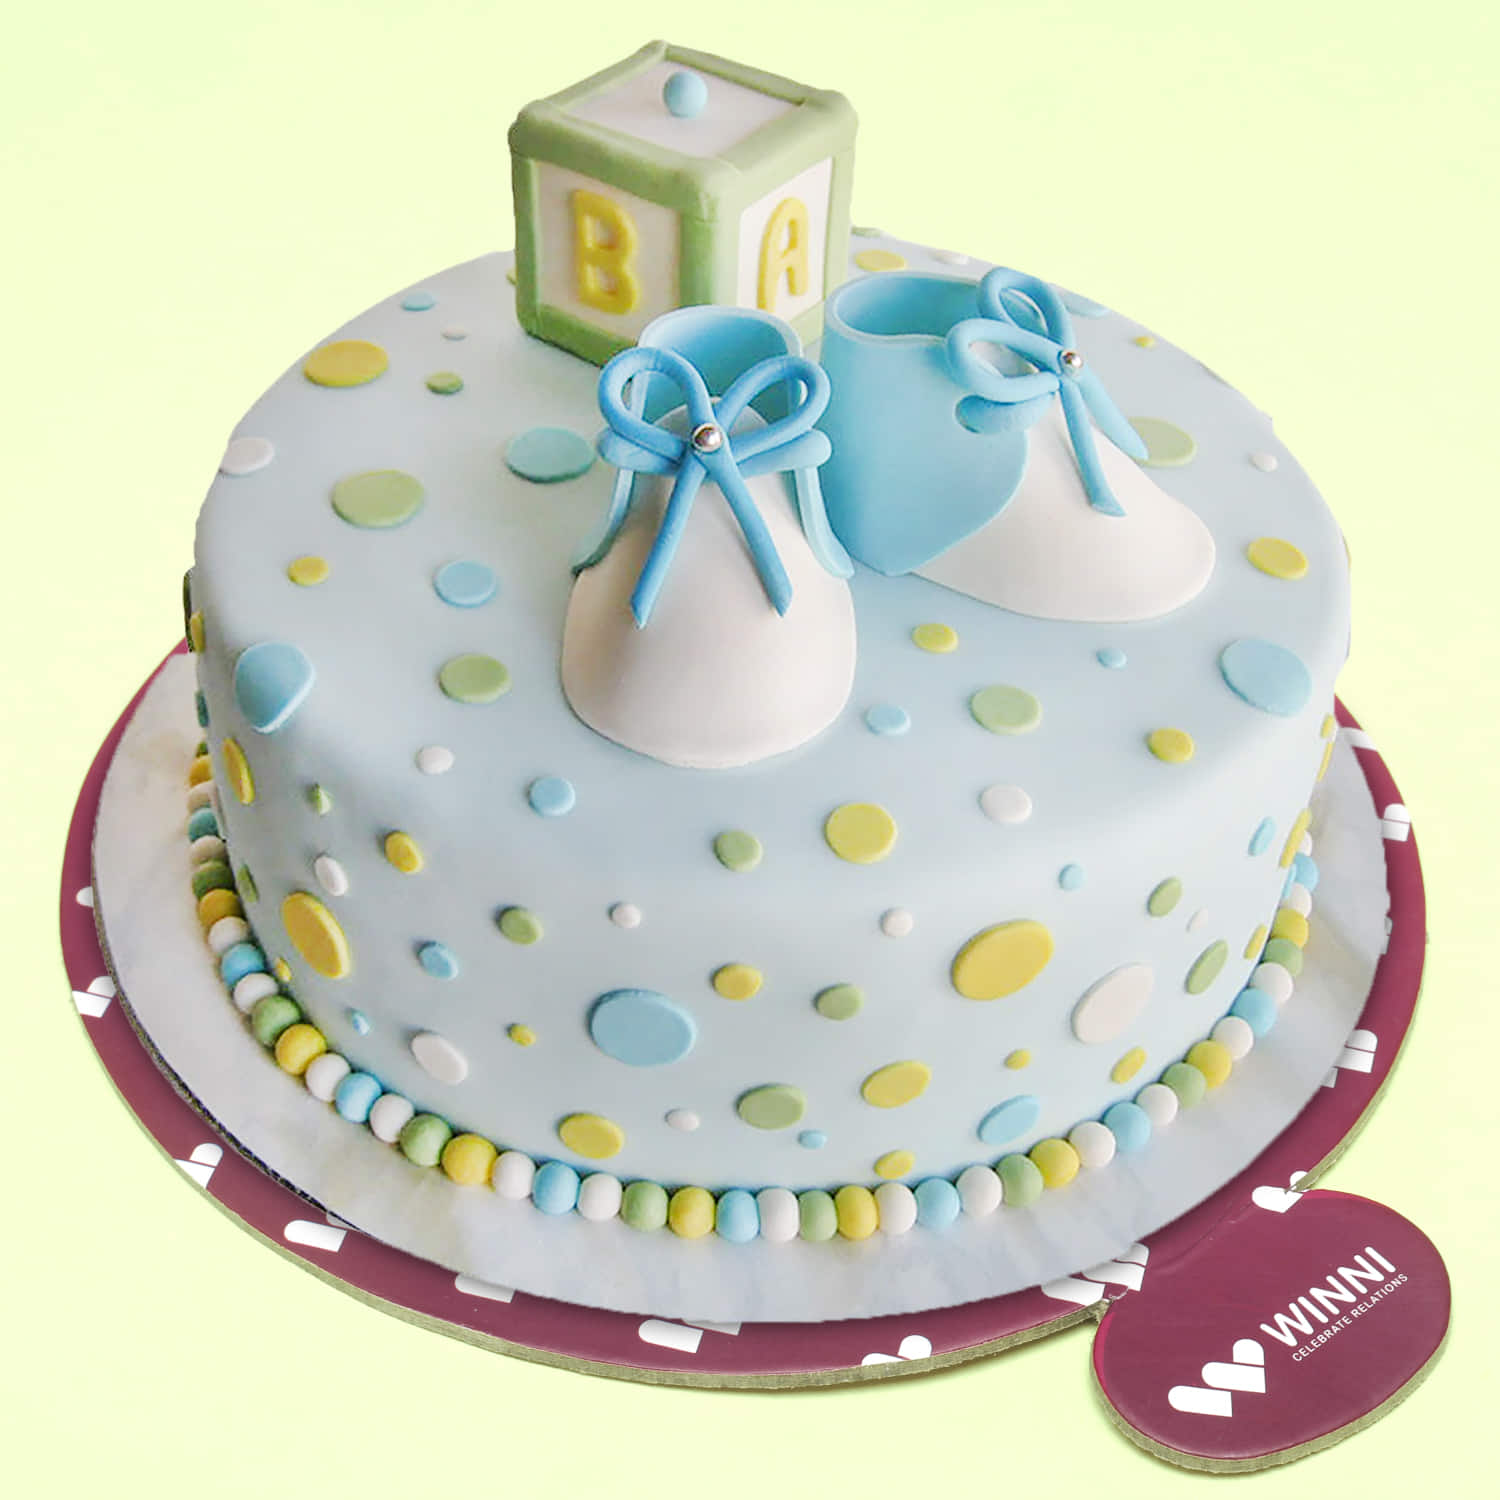 Louboutine shoe | Cake, Novelty cakes, Creative cakes